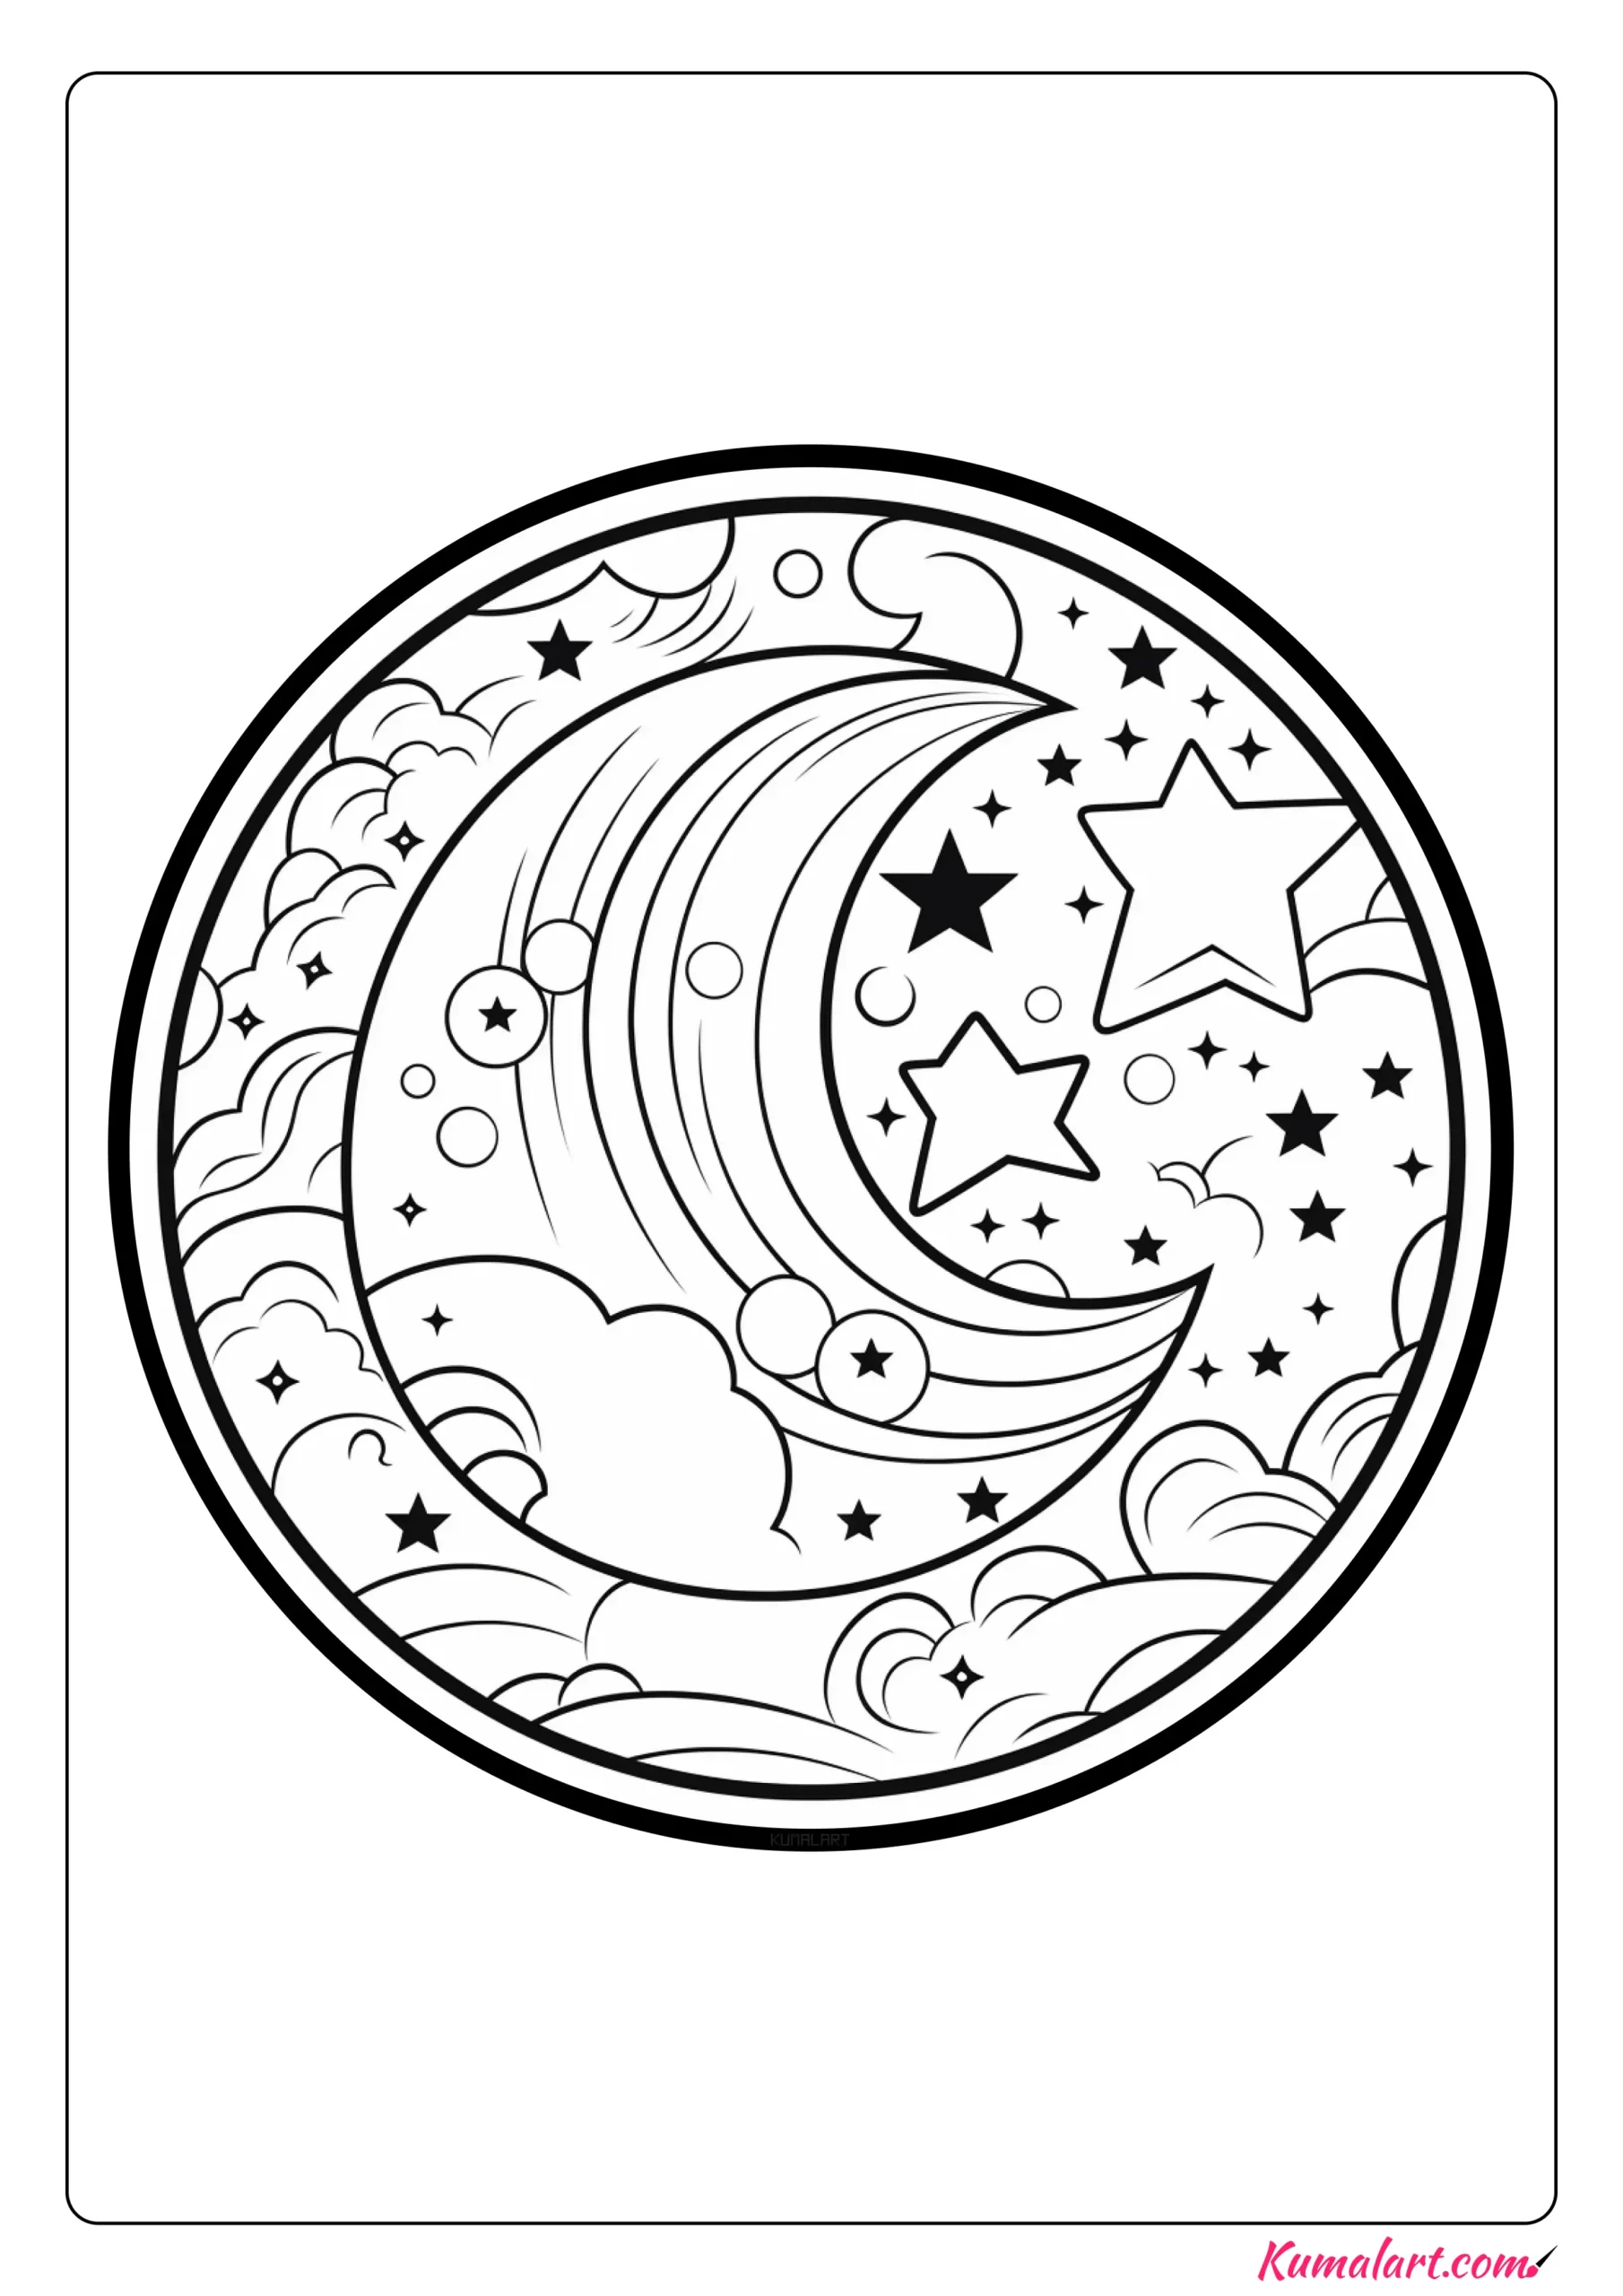 Abstract Moon Mandala Coloring Page